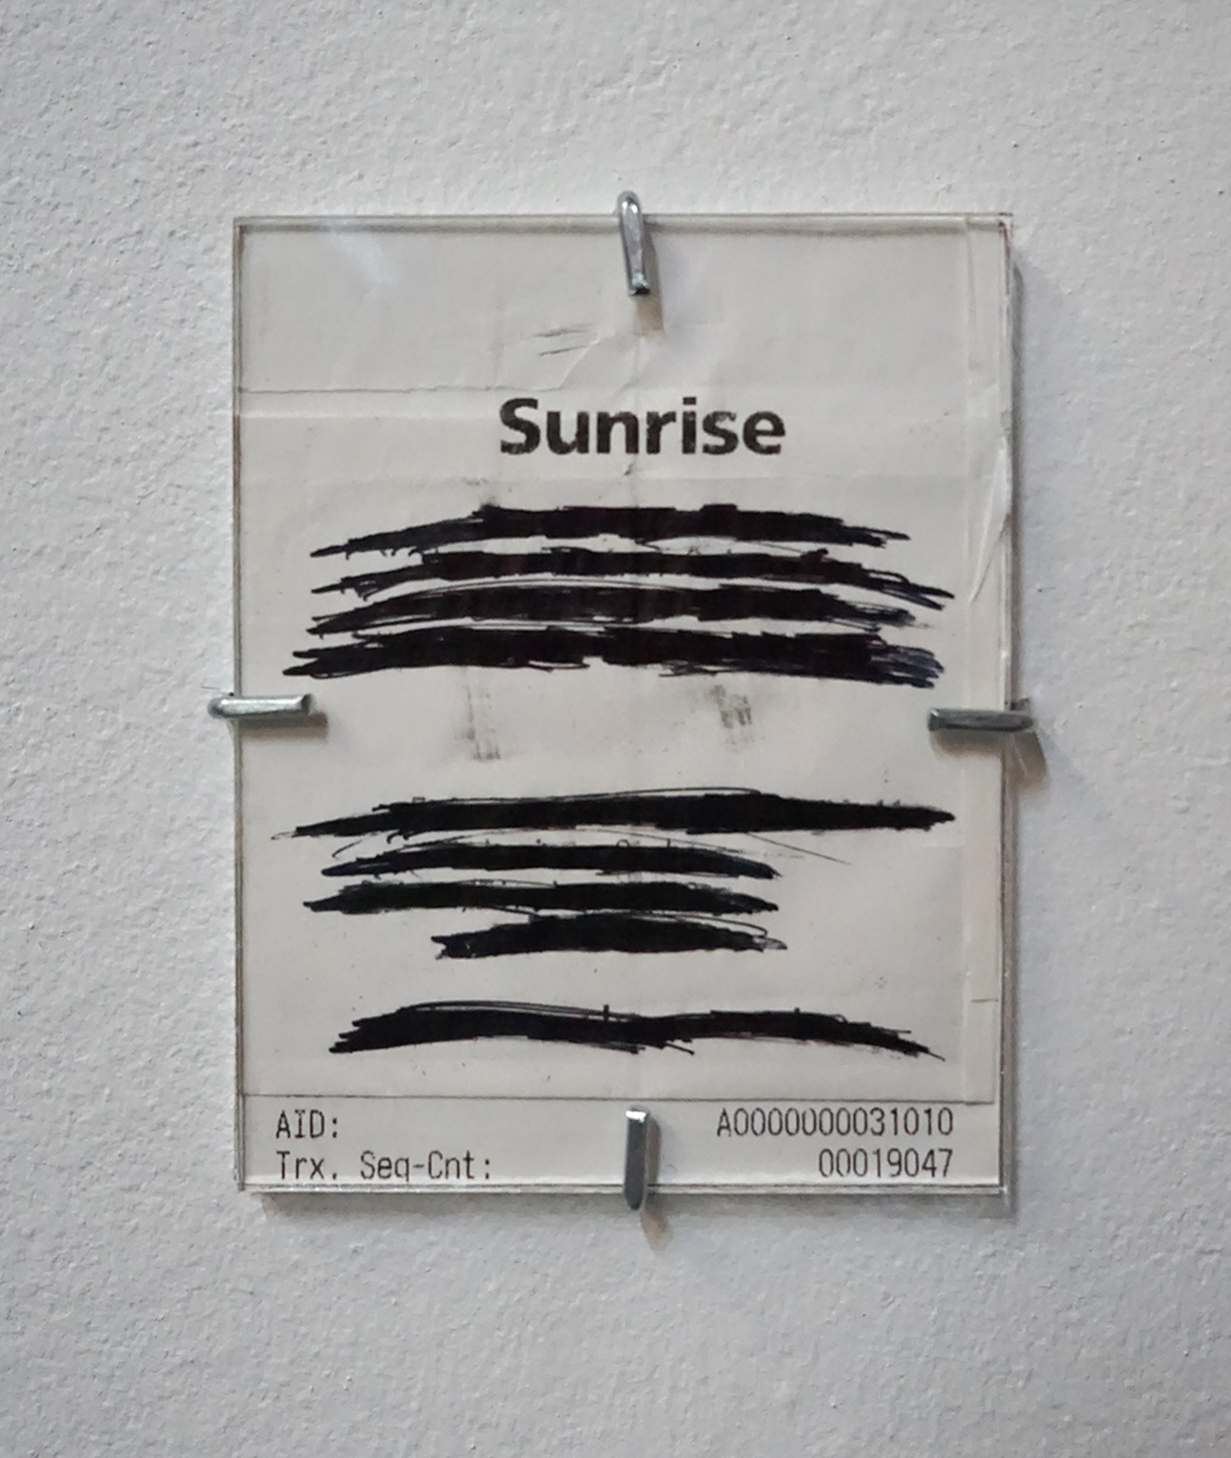 Wisrah Villefort, Set at BPA, Cologne. Sunrise II, 2022. (Pen on paper, 9.7 x 7.3 cm).